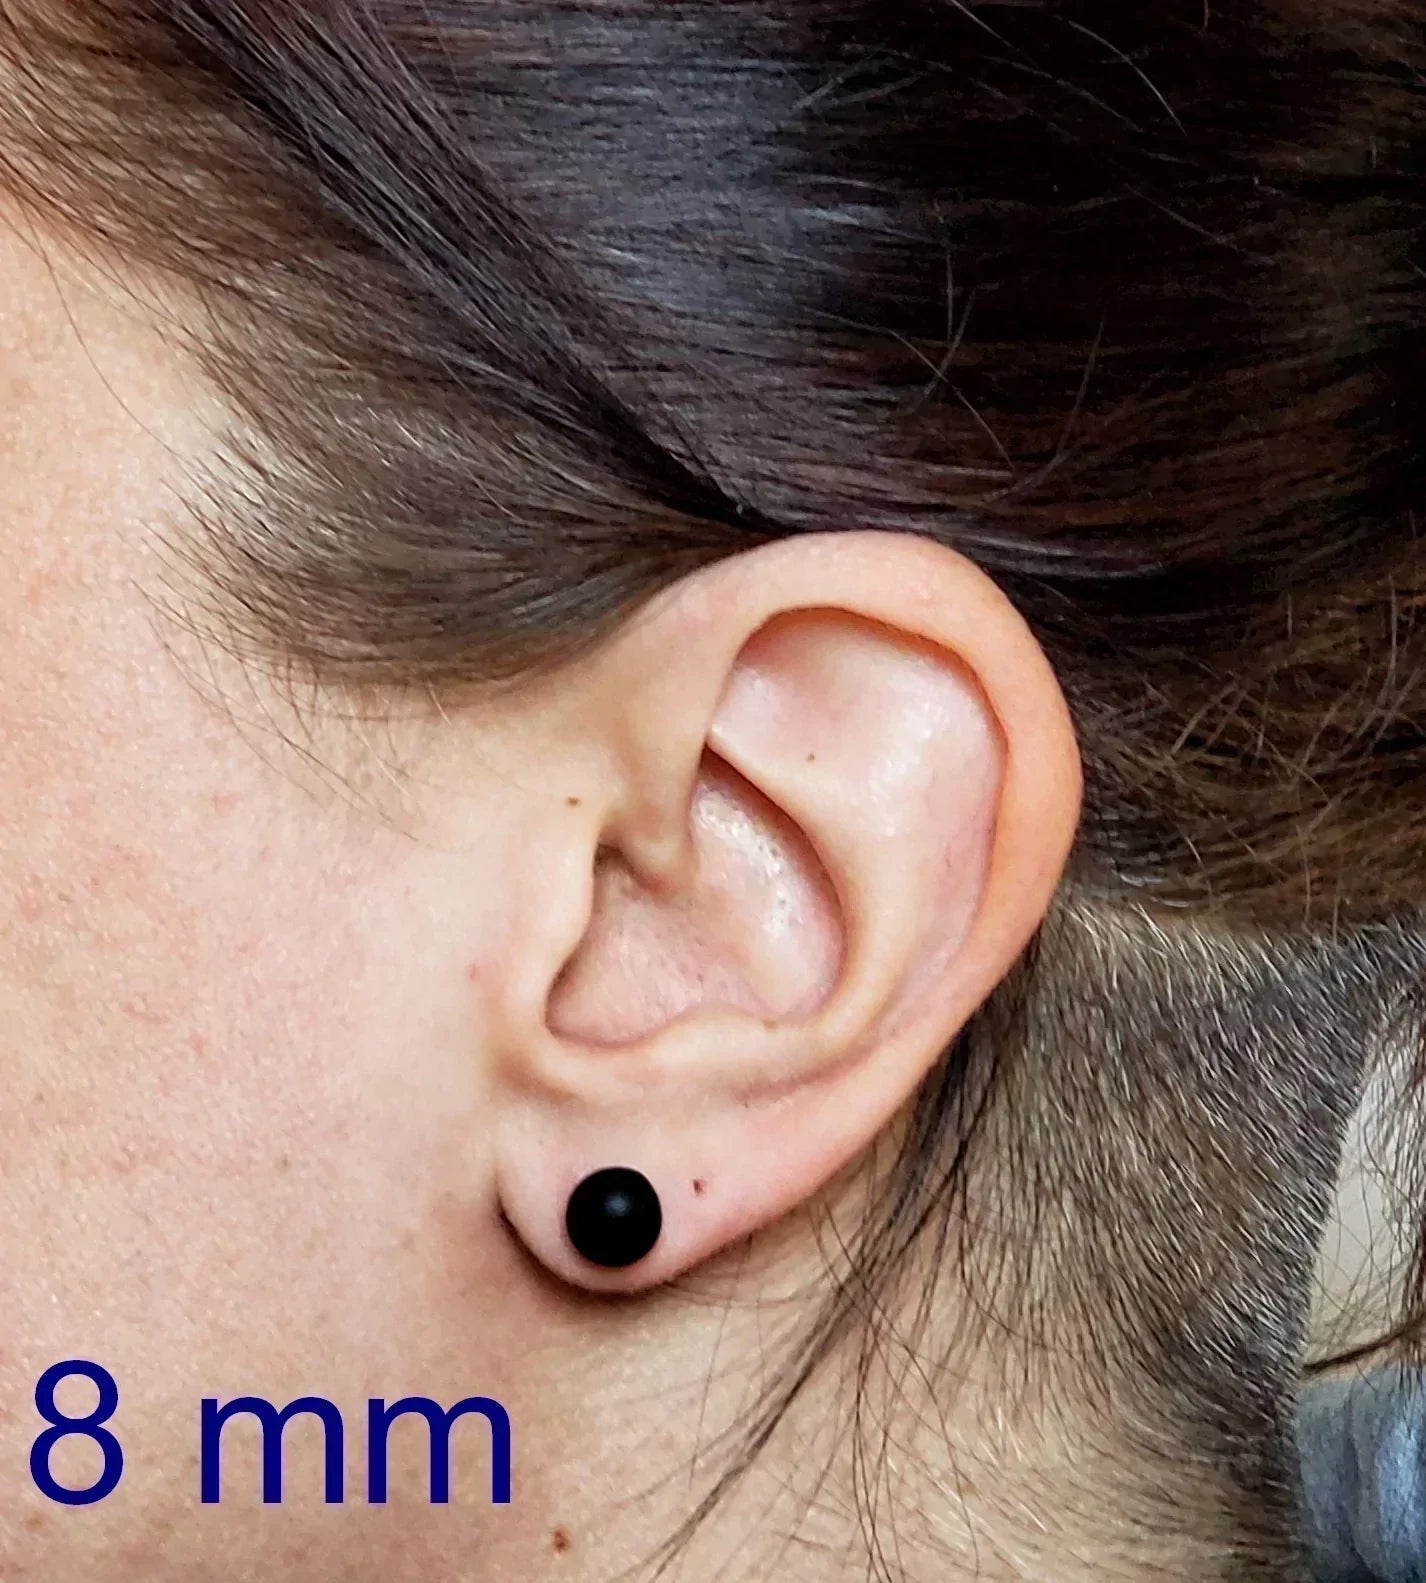 +/- 12 mm, Boucles d'oreilles dépareillées, verre fusion #44 - Bijoux Le fil d'Ariane